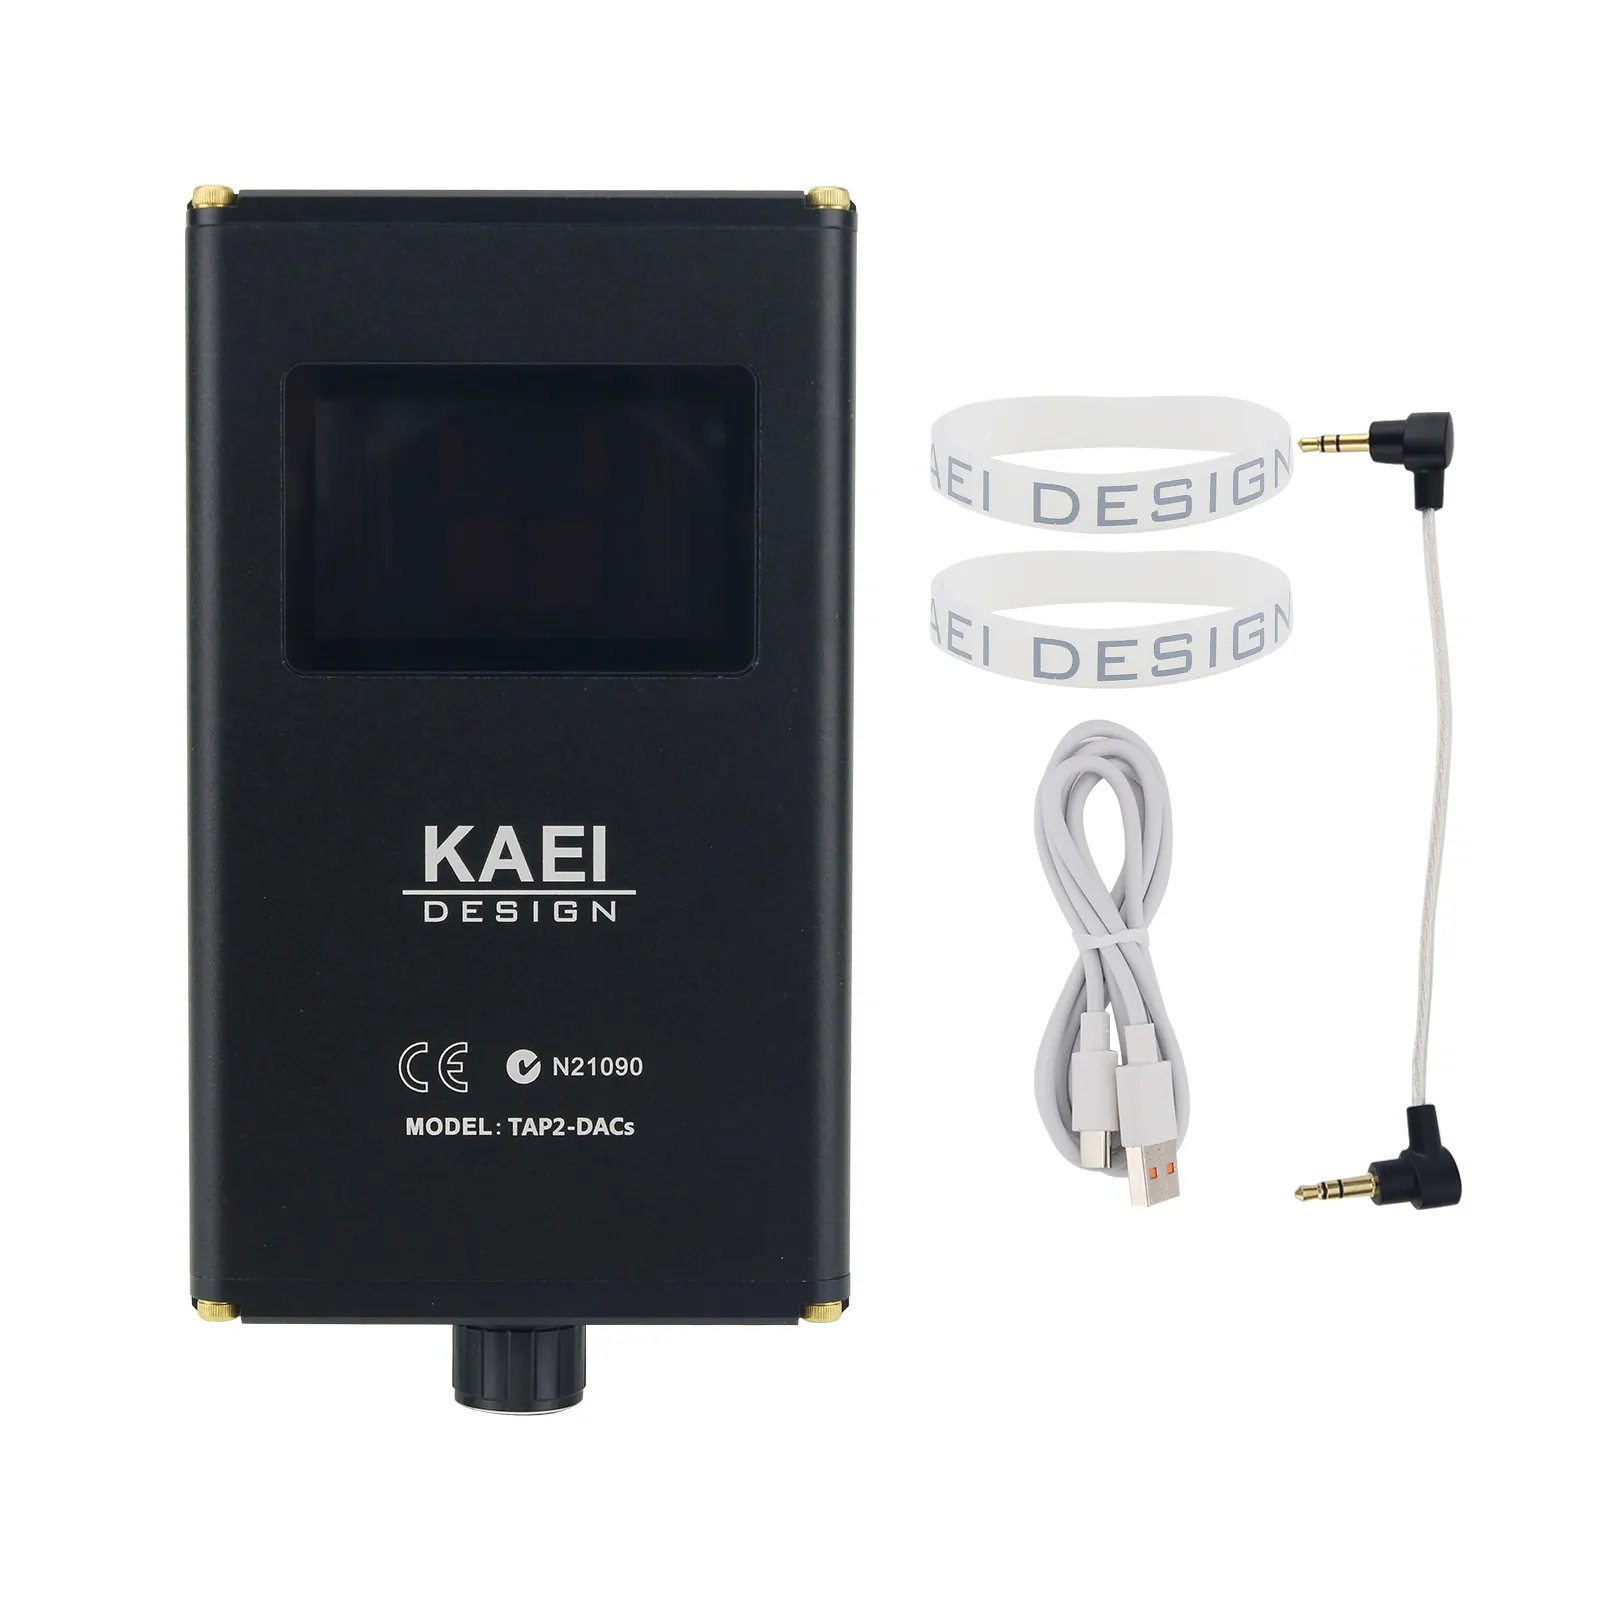 Kaei design amplificador de fone de ouvido, mini hifi design tap-2 (atualizado op amp muses02)